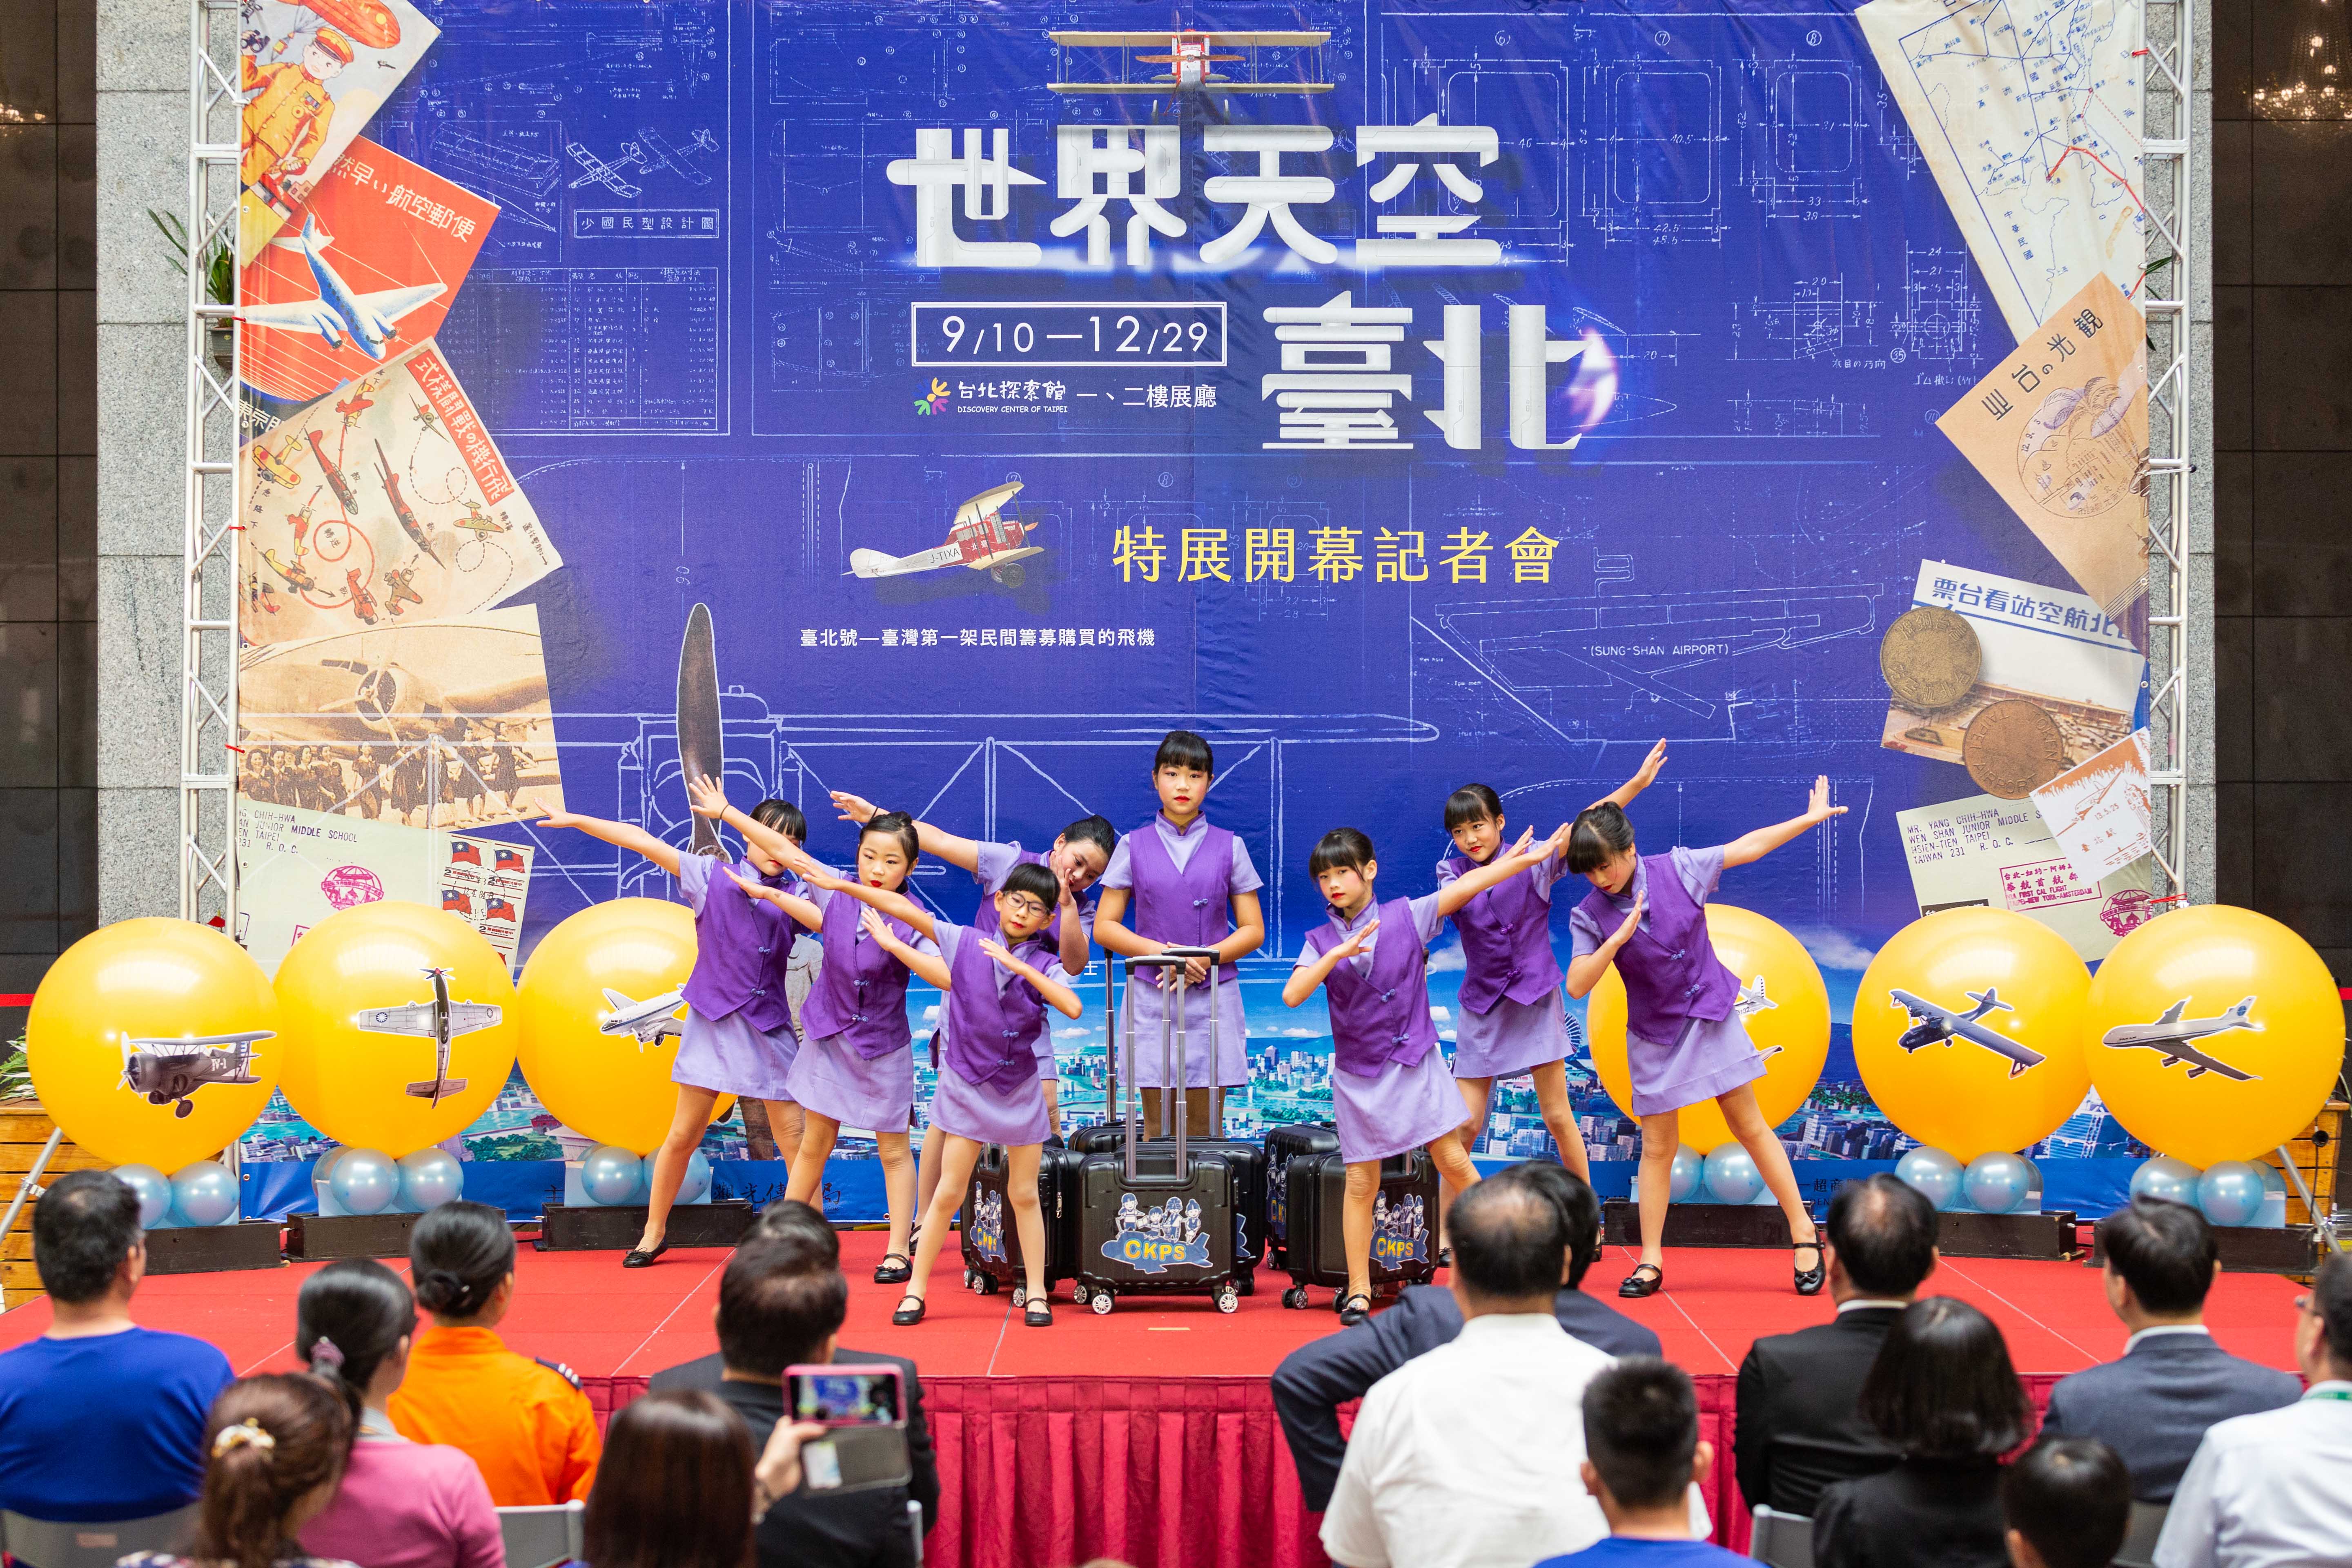 「世界天空臺北」特展開幕邀請前空軍子弟學校「陳康國小」帶來活潑的航空舞